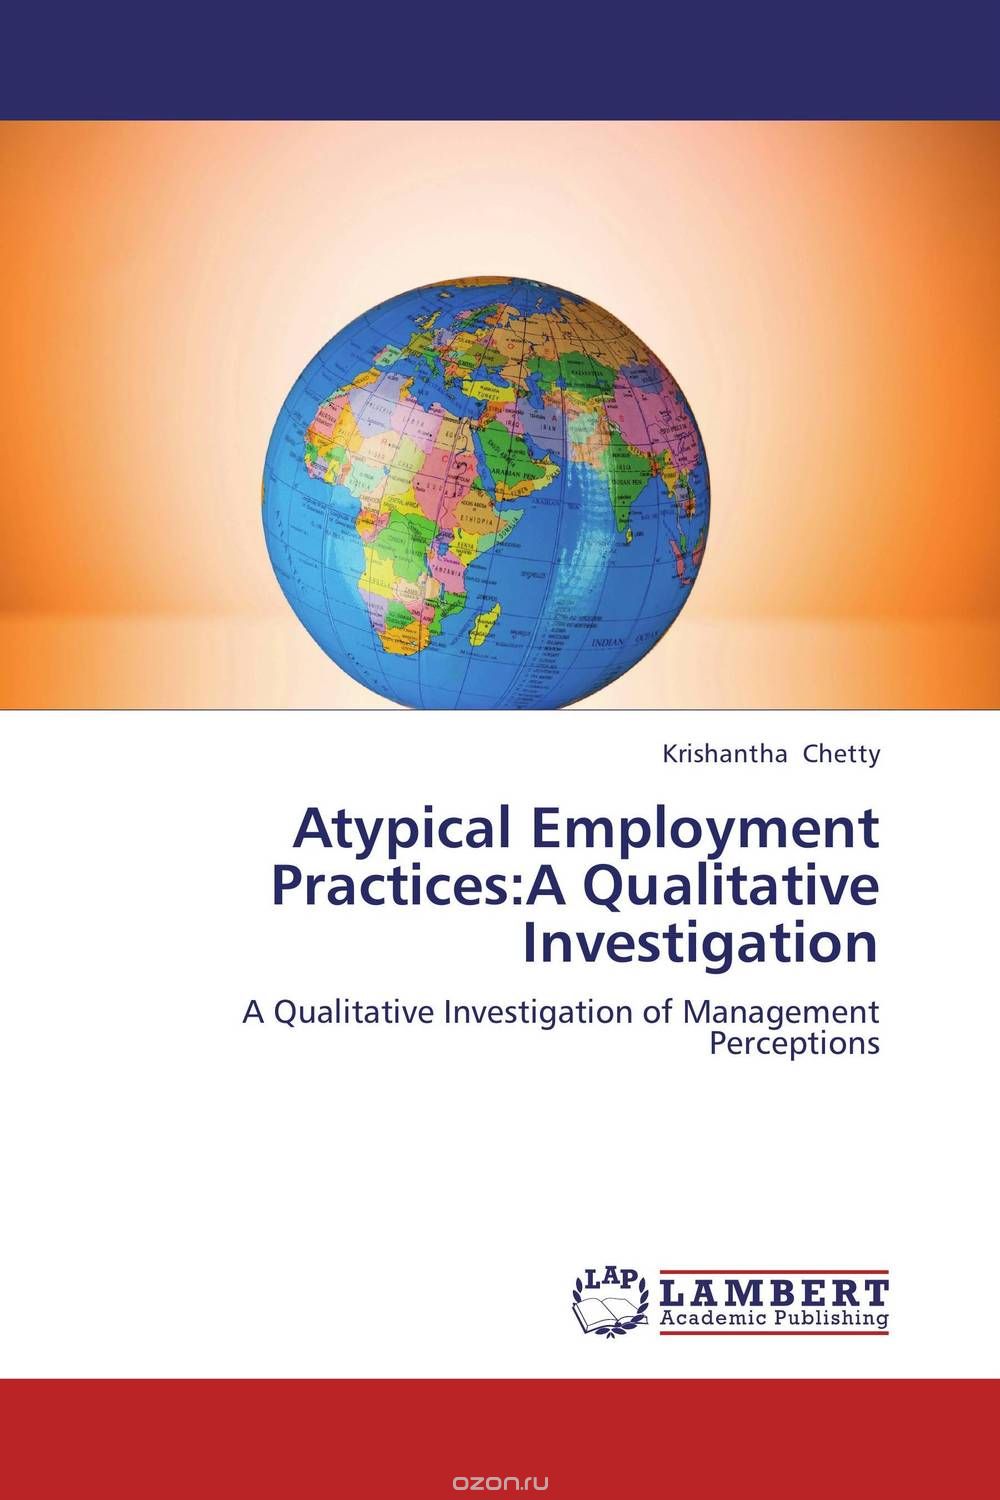 Скачать книгу "Atypical Employment Practices:A Qualitative Investigation"